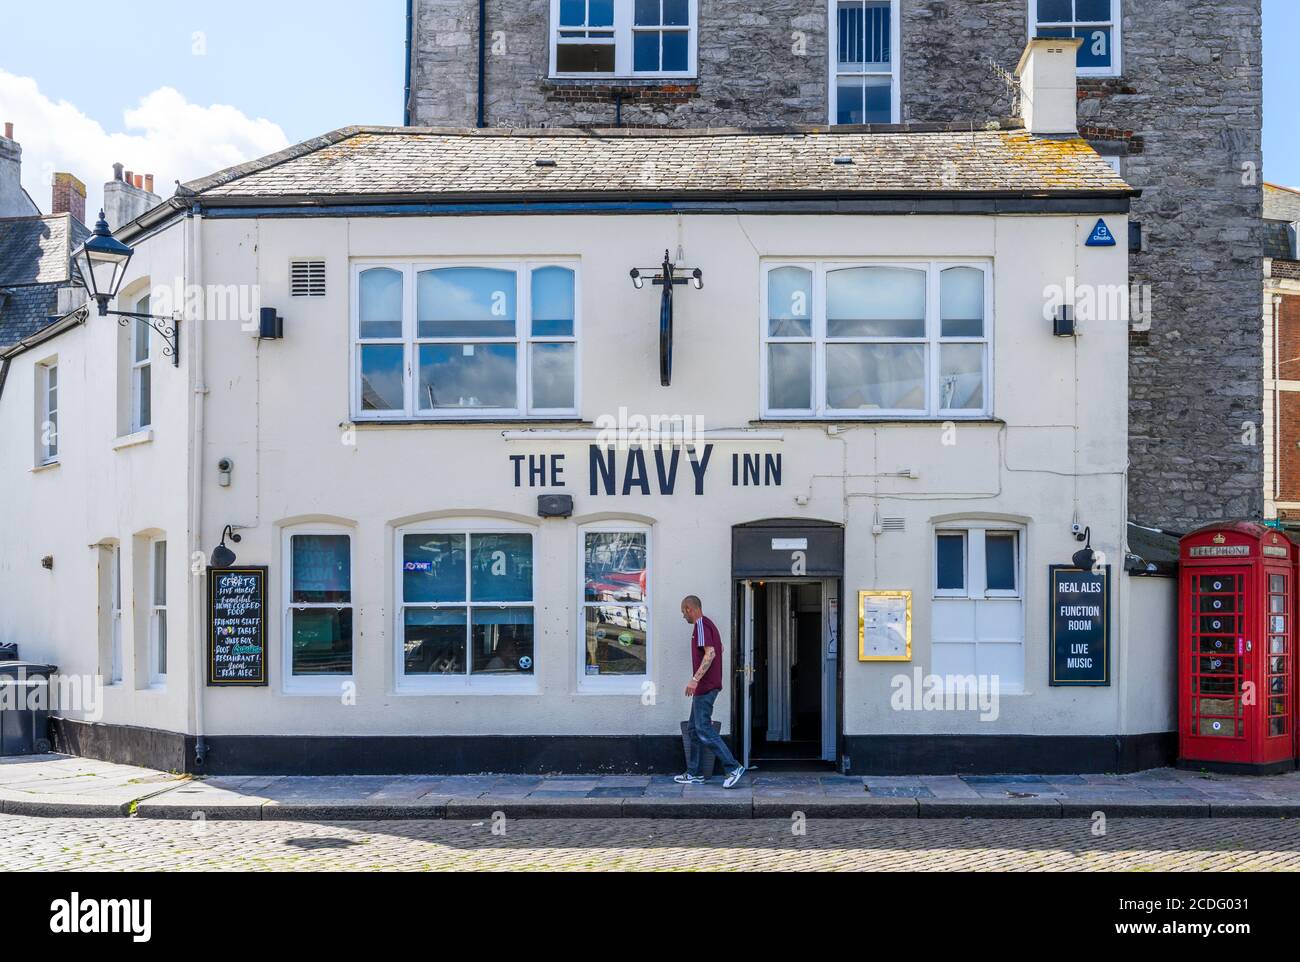 Das Navy Inn ist ein populäres Grade II denkmalgeschütztes öffentliches Haus in Plymouth Barbican. Plymouth, Devon, England, Großbritannien. Stockfoto